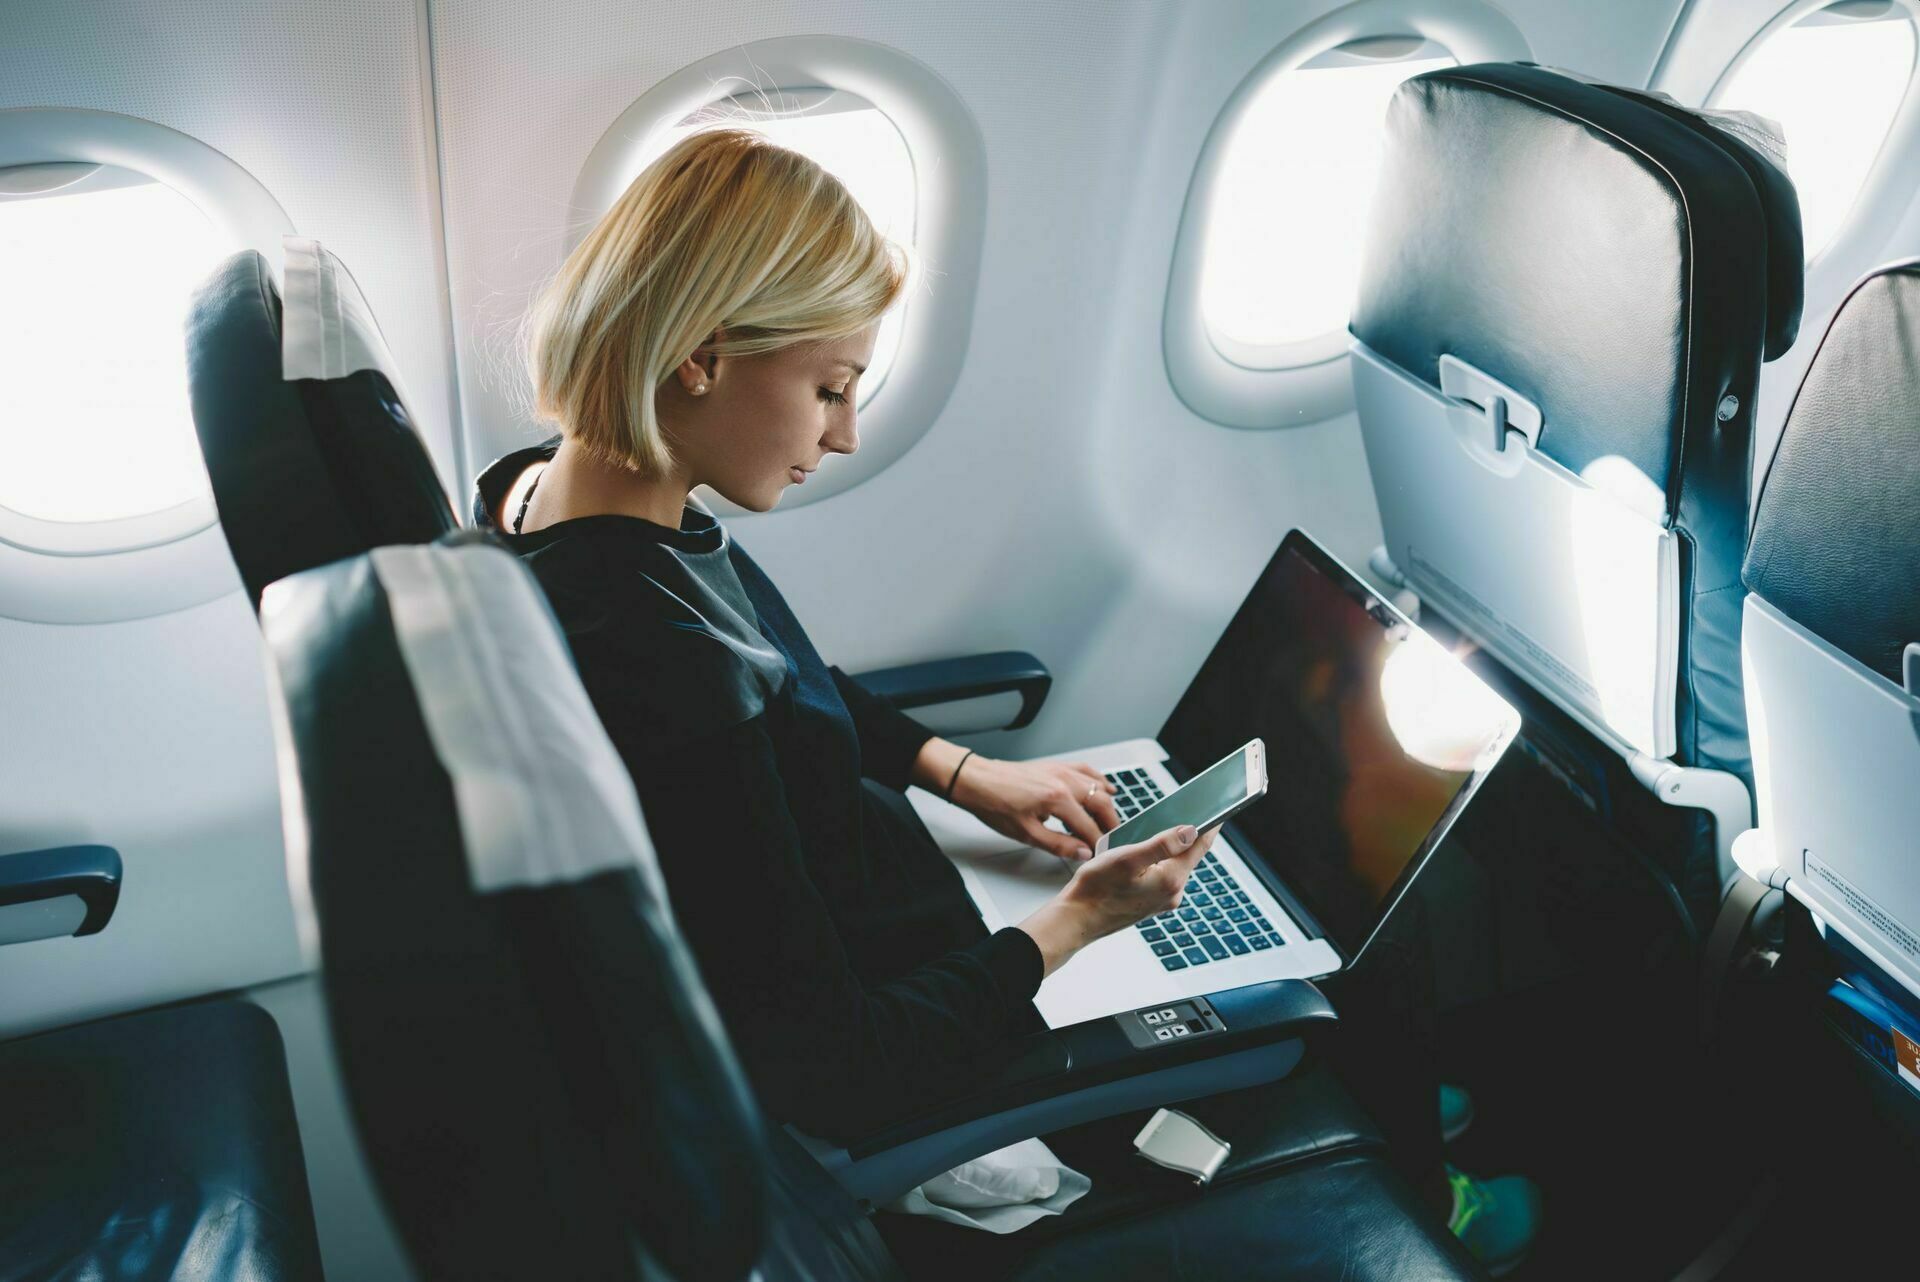 В 2022 году авиапассажиры смогут пользоваться на борту интернетом по лазерной связи